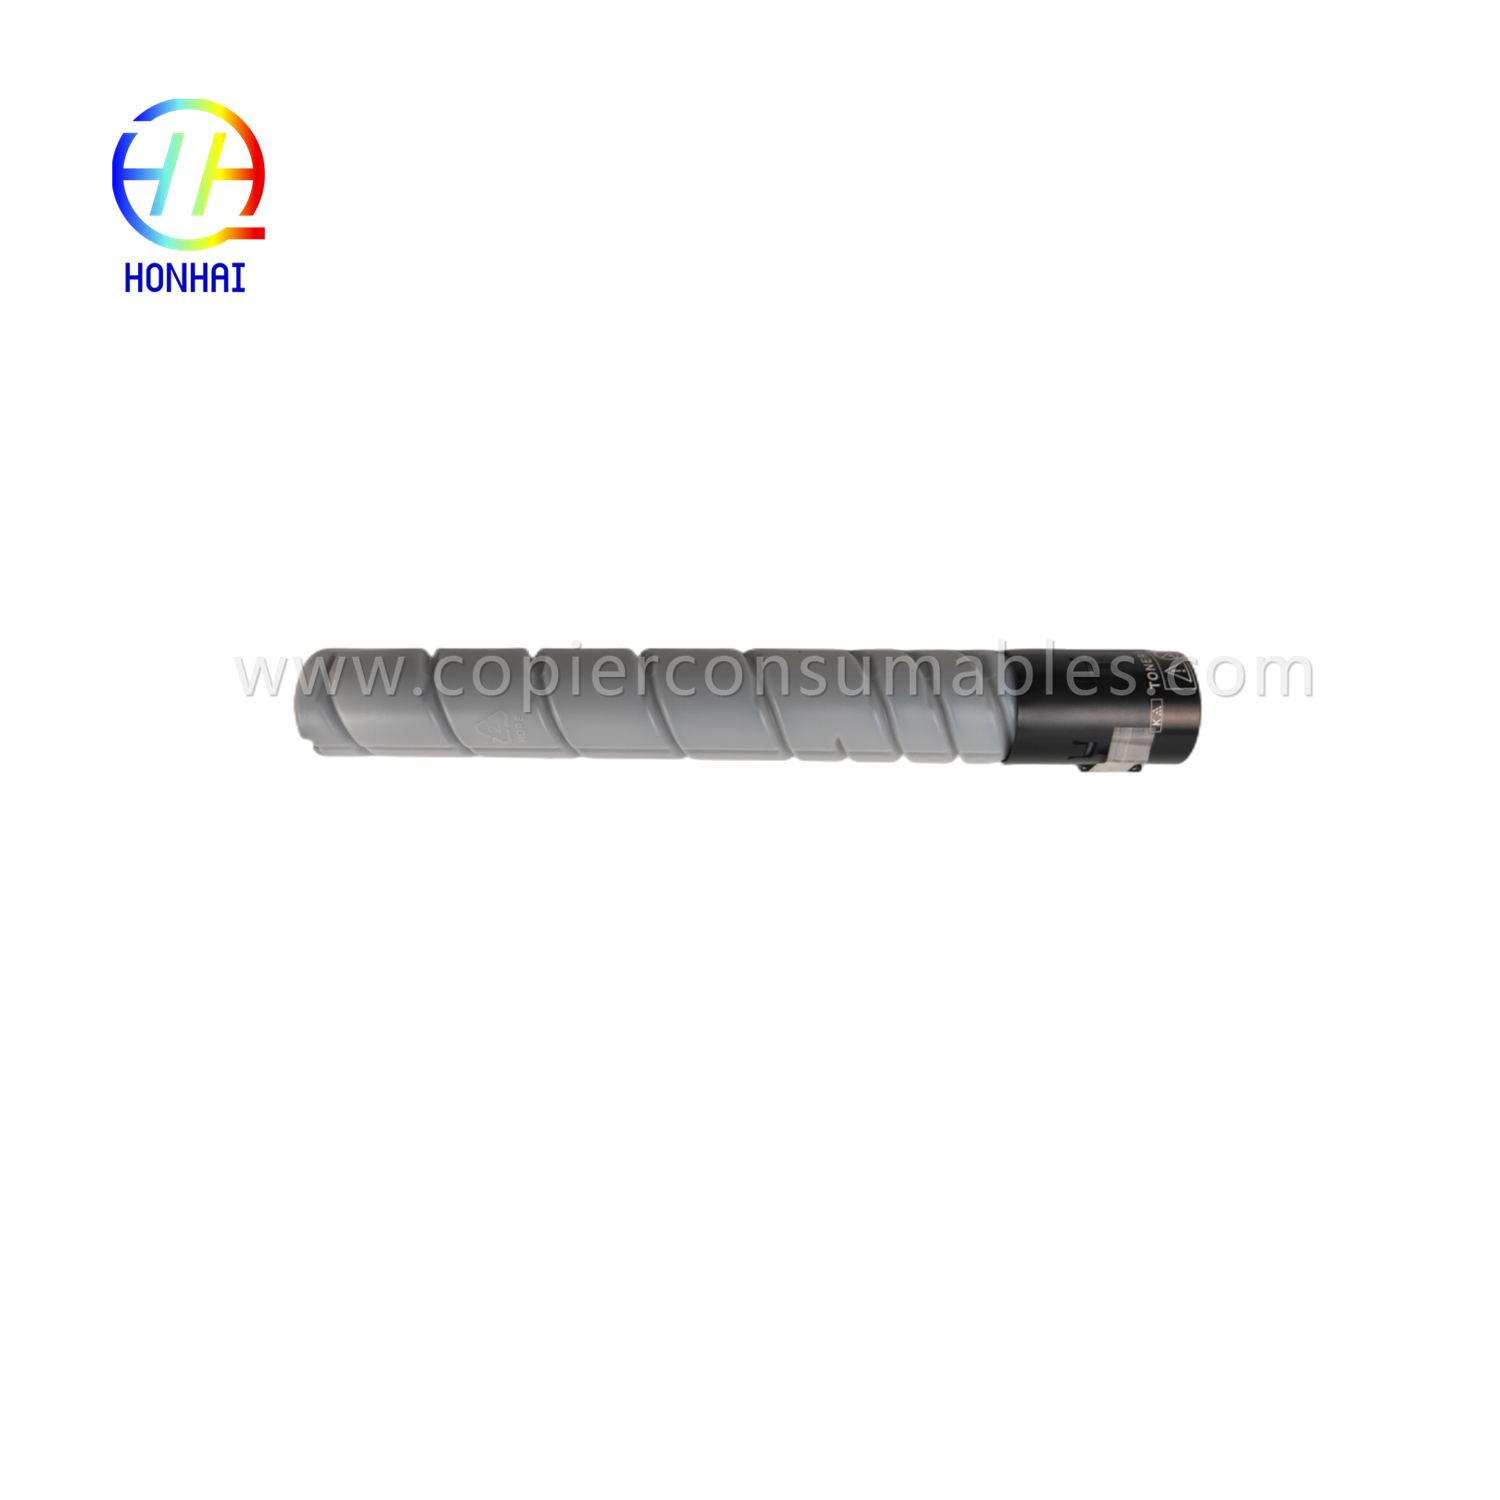 Toner Cartridge Black mo Konica Minolta TN323 Bizhub C227 C287 C367 (1)